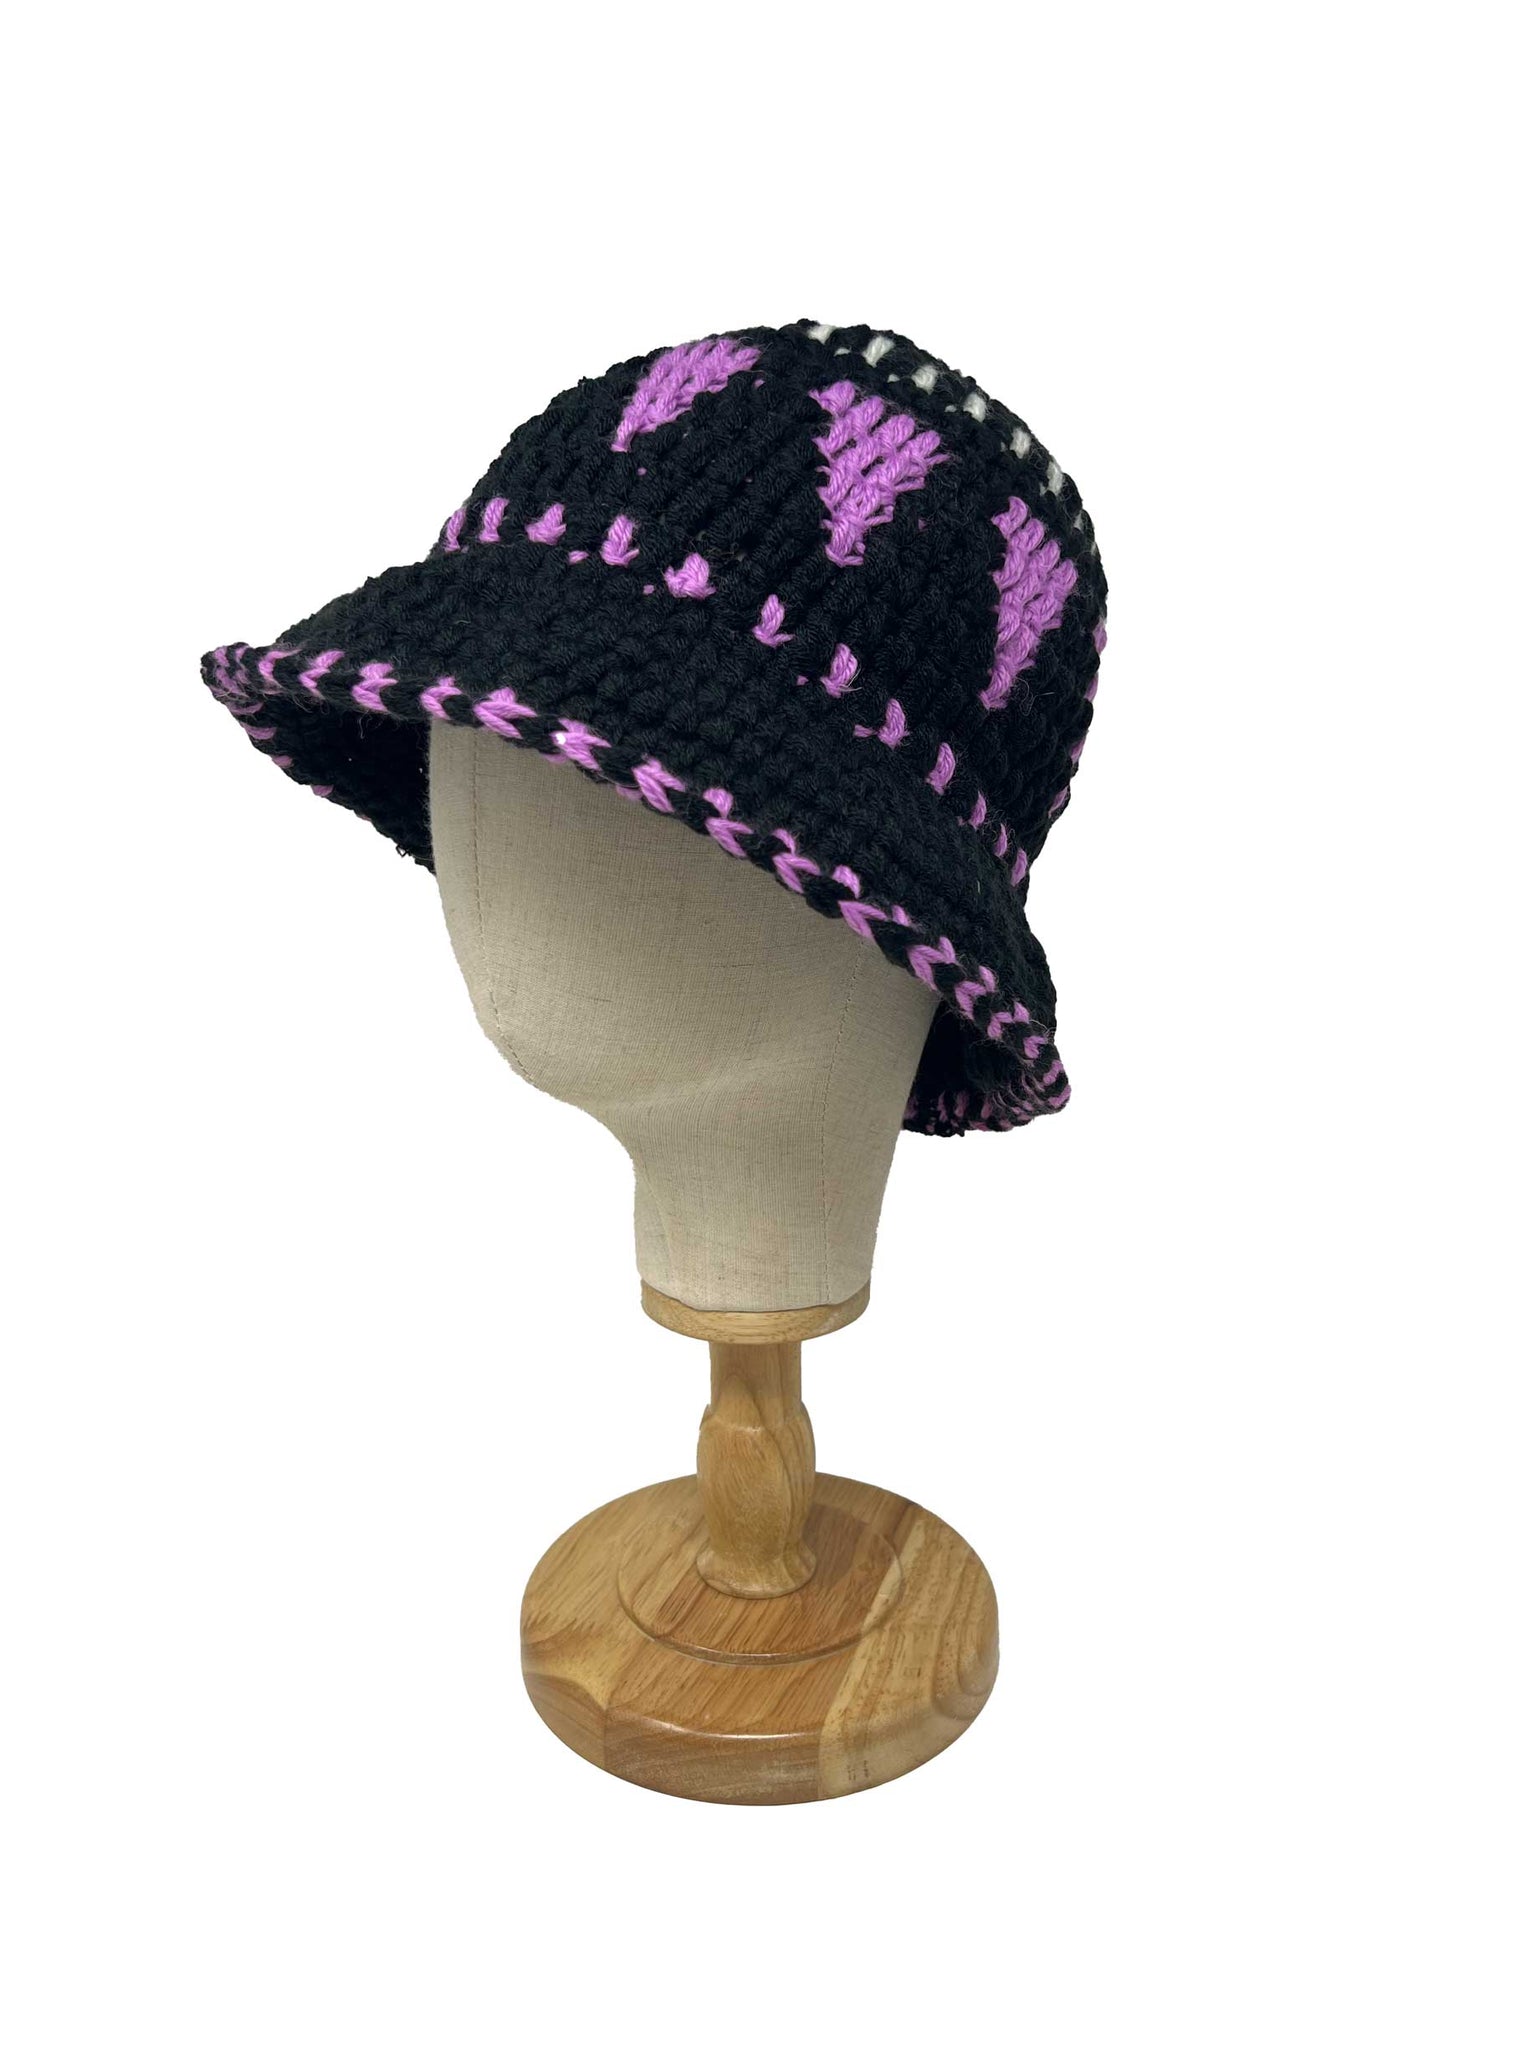 Cappello a secchiello lavorato all'uncinetto in lana etnica nera e lilla